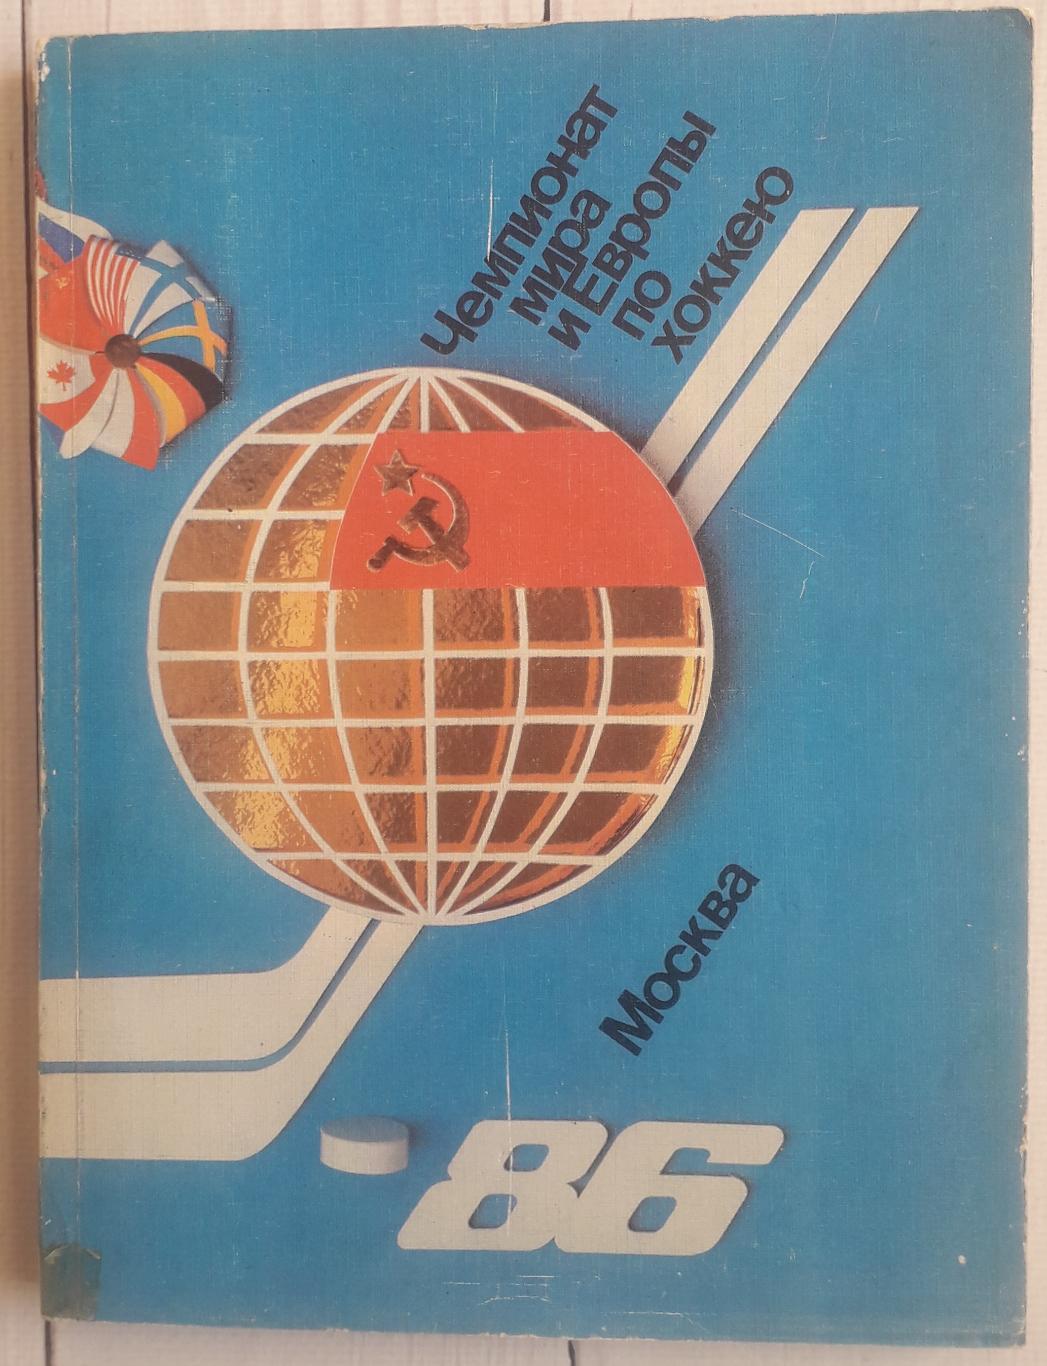 Програма-календар. Чемпіонат Світу і Європи по хокею. Москва-86.